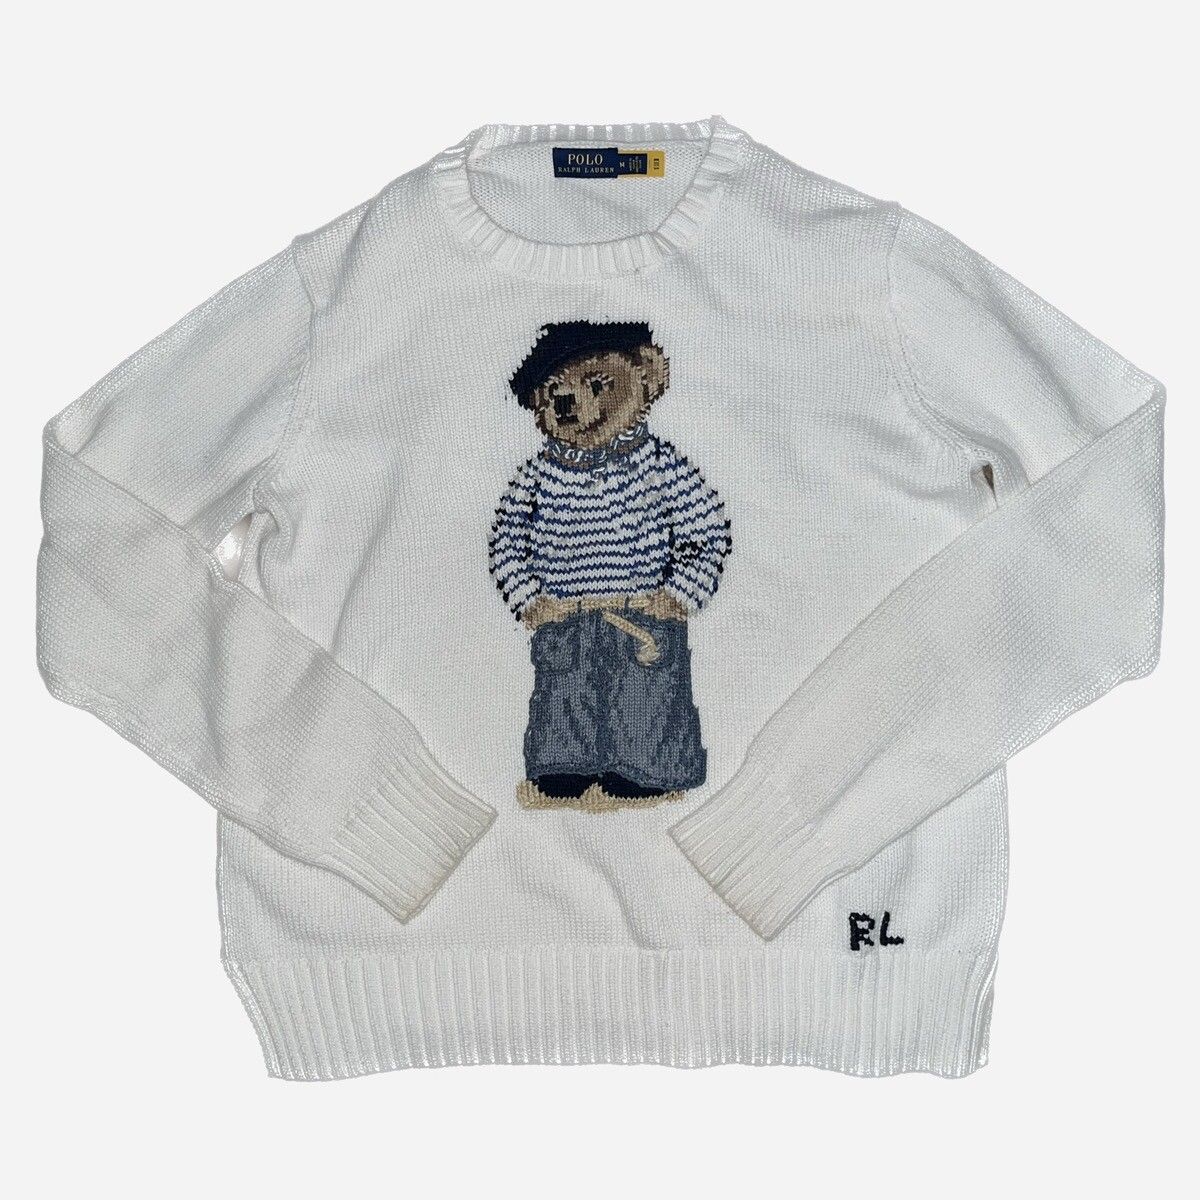 Ralph Lauren polo ralph lauren beret bear sweater Size M / US 6-8 / IT 42-44 - 1 Preview